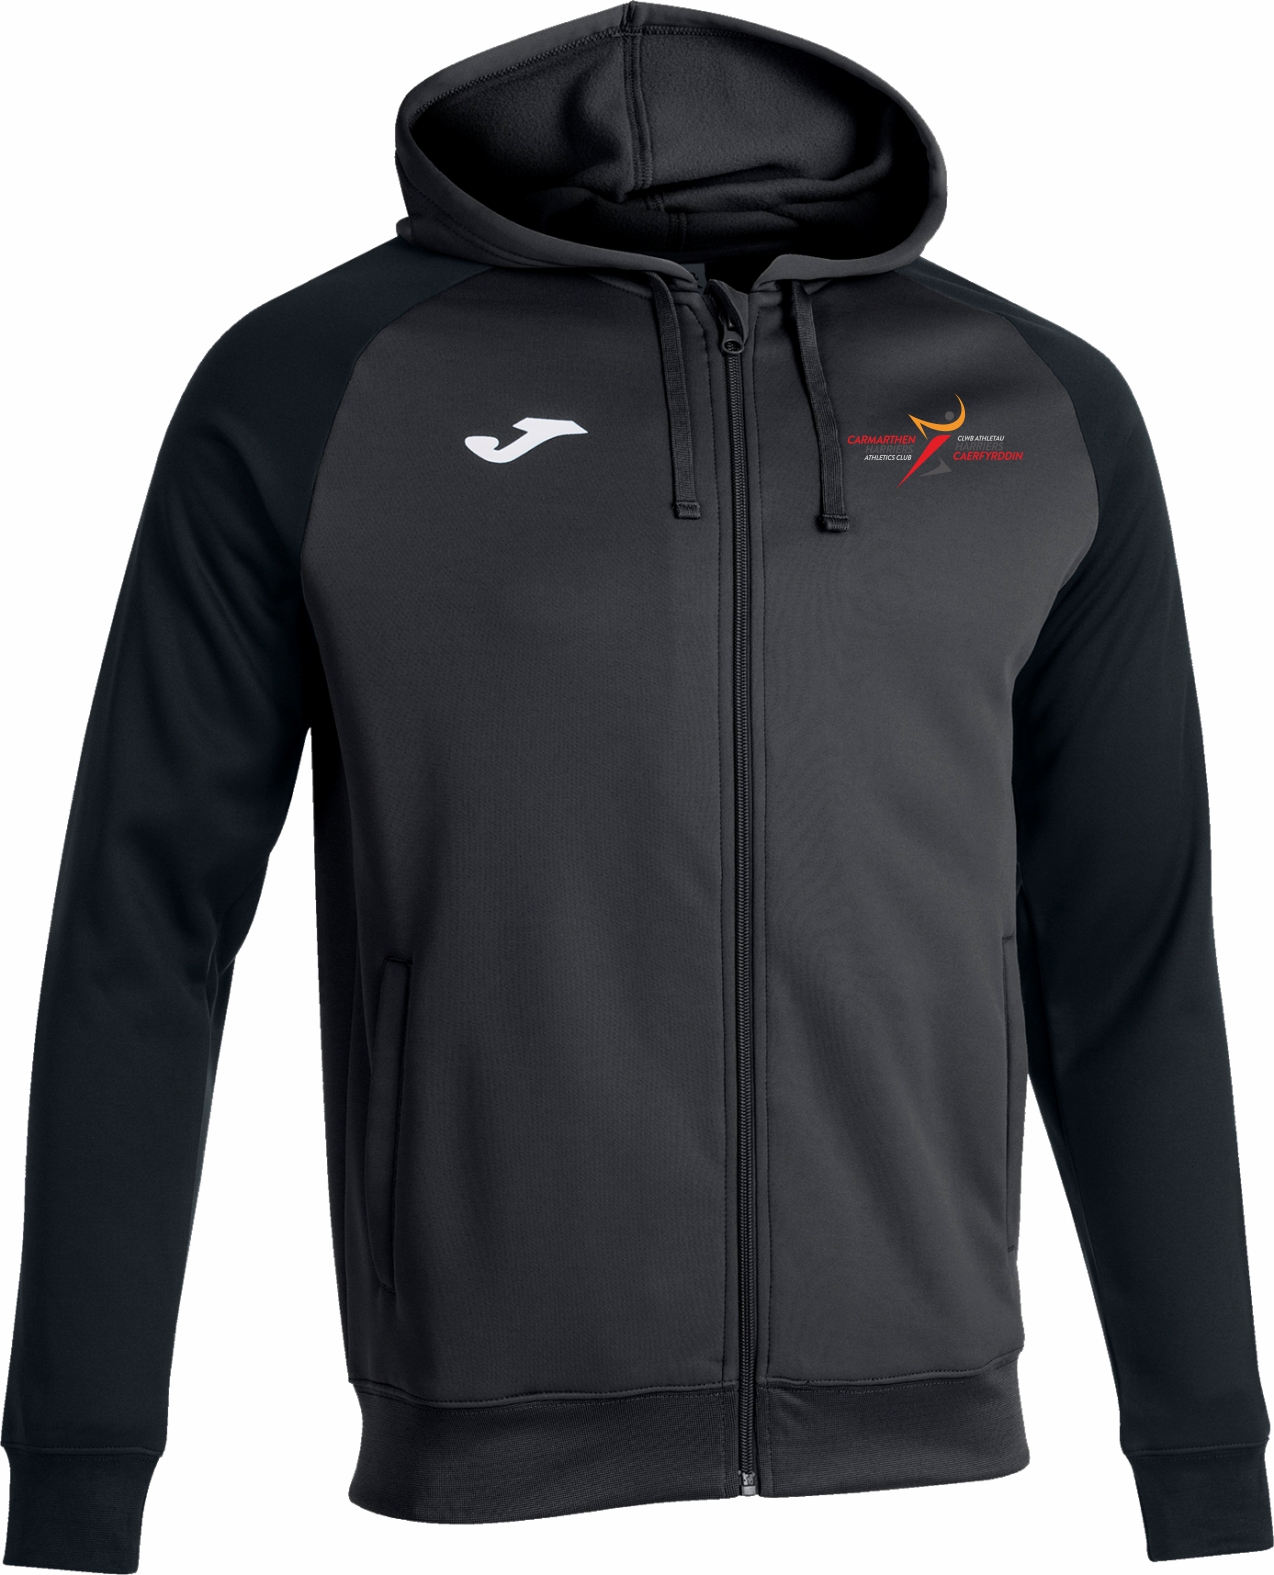 Total Teamwear :: CARMARTHEN HARRIERS Unisex Full zip hooded jacket